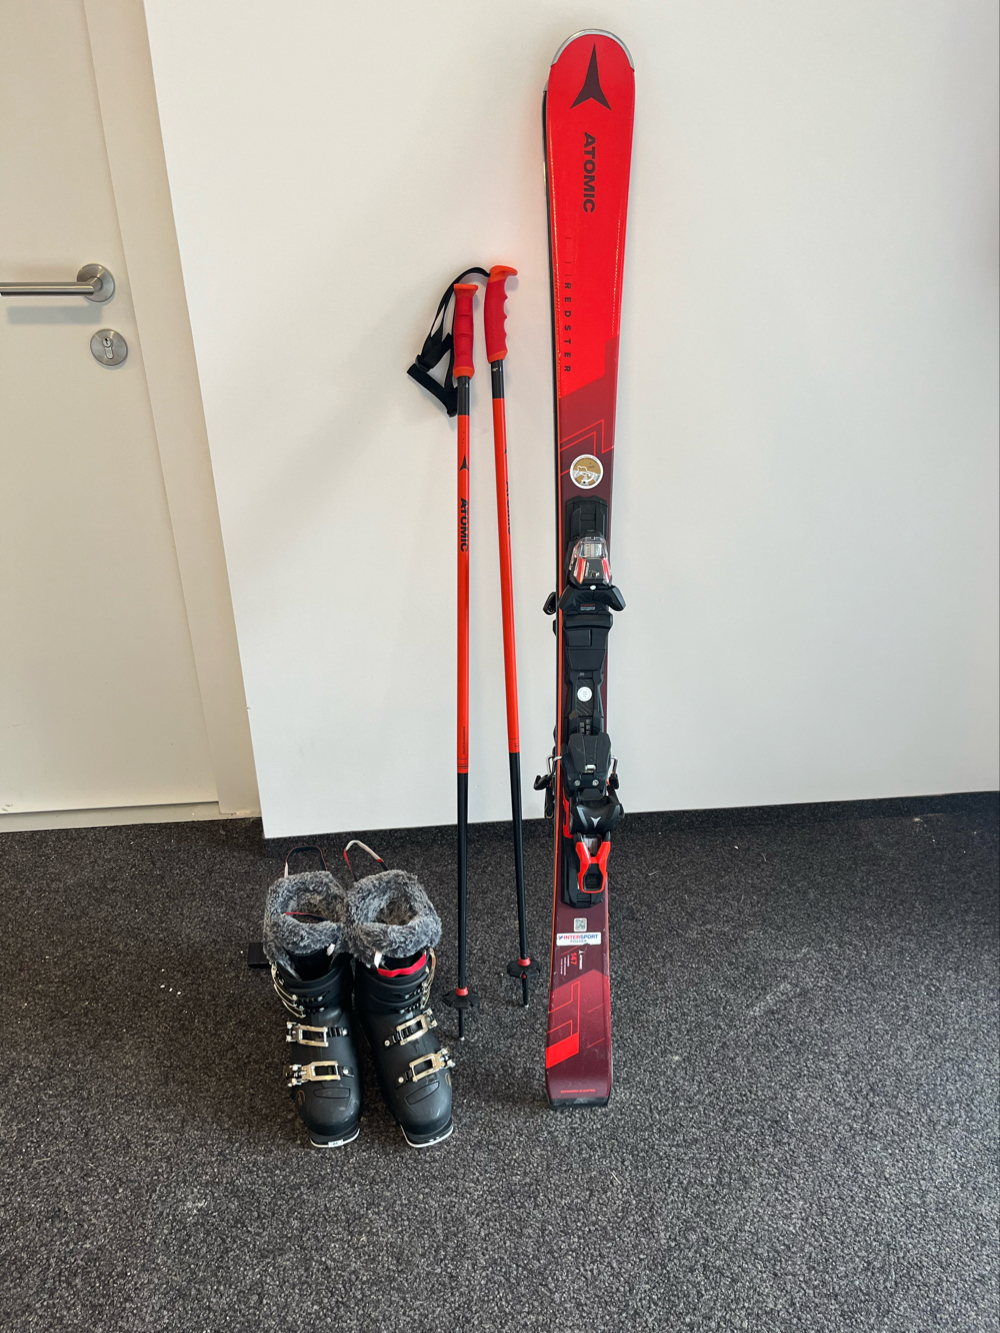 NEU Atomic Ski mit Bindung und Stöcken plus Rossignol Skischuhen